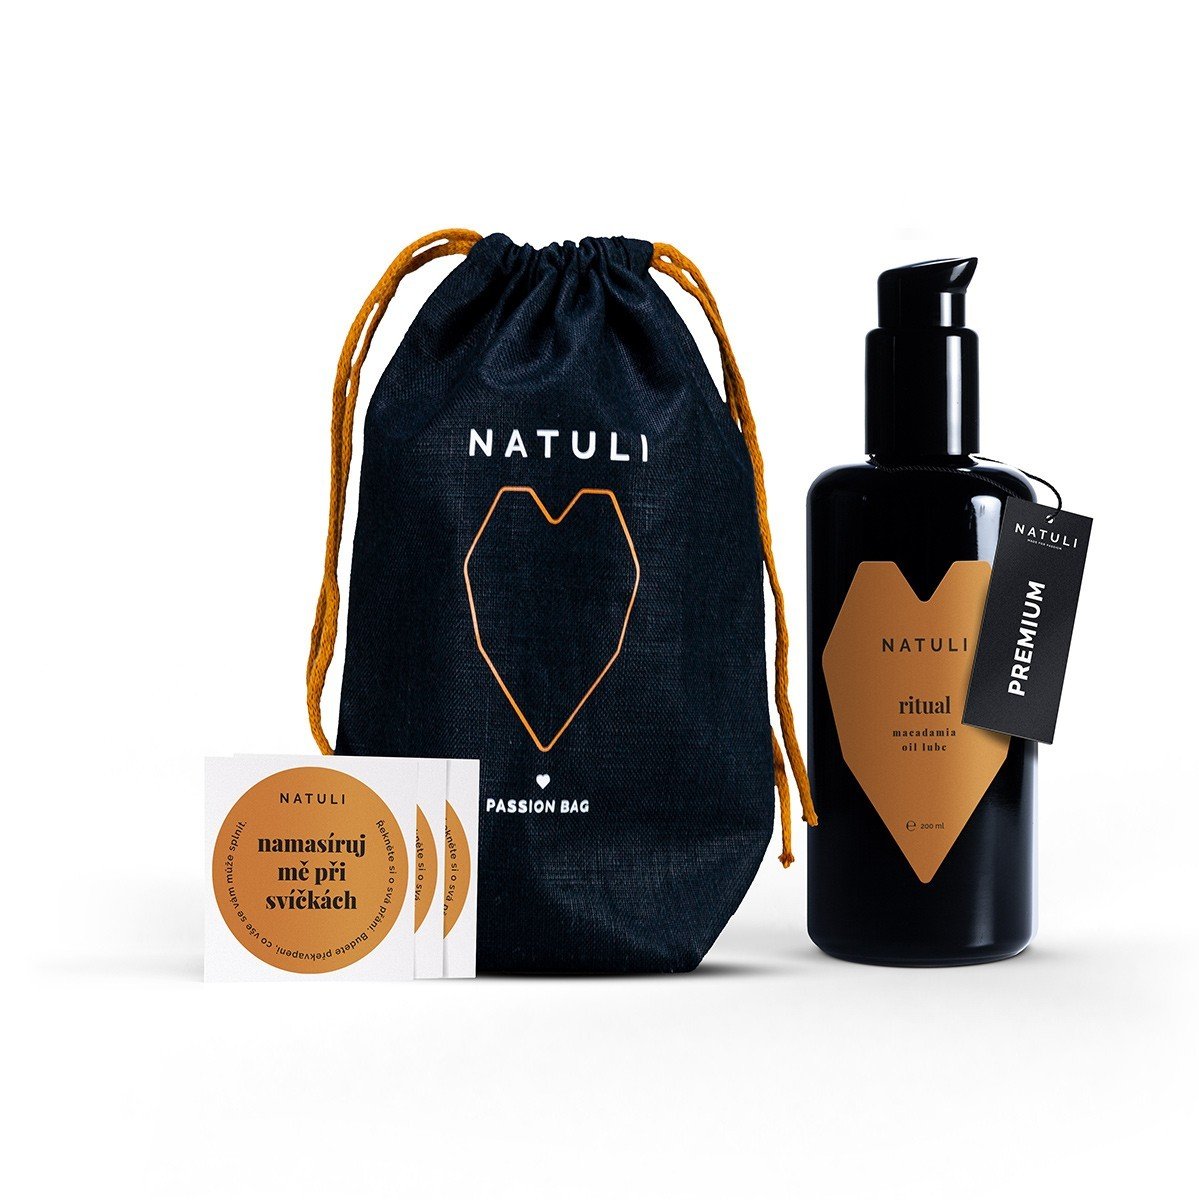 Natuli Premium Ritual Gift 200 ml, olejový lubrikant s bambuckým maslom v darčekovom balení